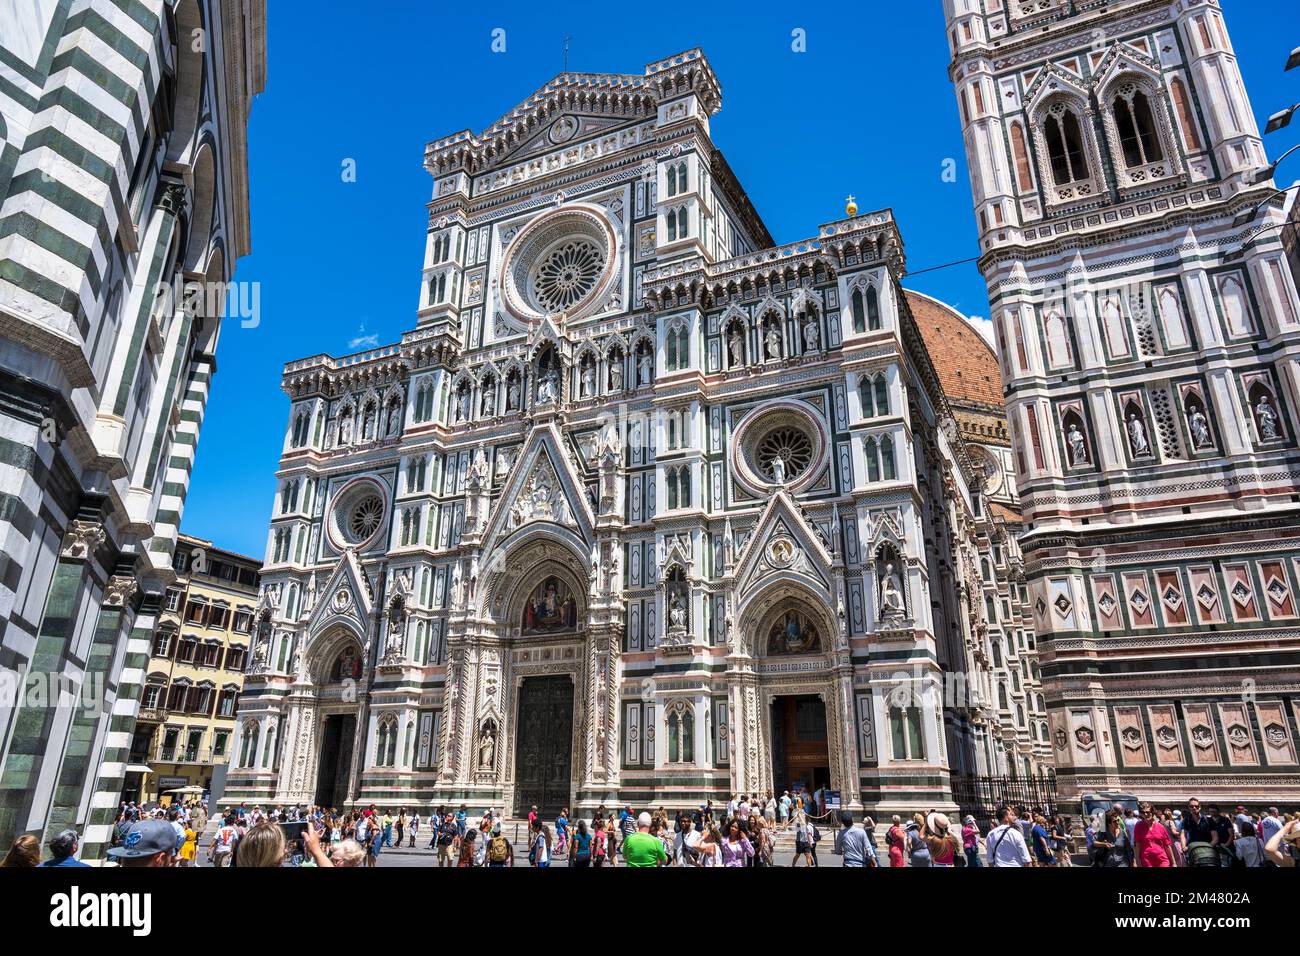 Façade of Duomo di Firenze and Campanile di Giotto in Piazza del Duomo in Florence, Tuscany Italy Stock Photo